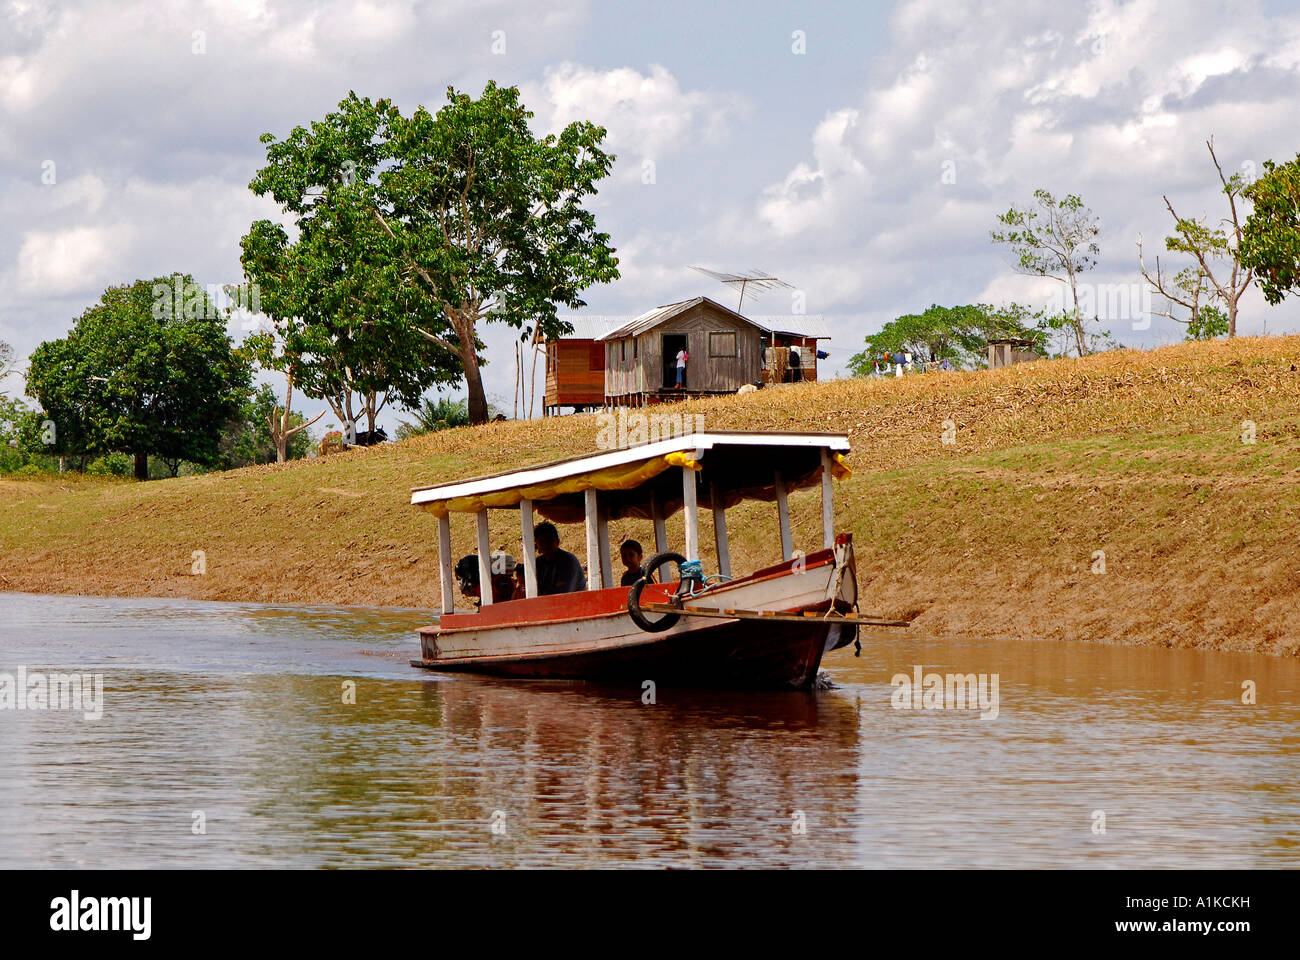 Paquetboat cerca de una aldea en la zona de Rio Negro, Brasil Foto de stock